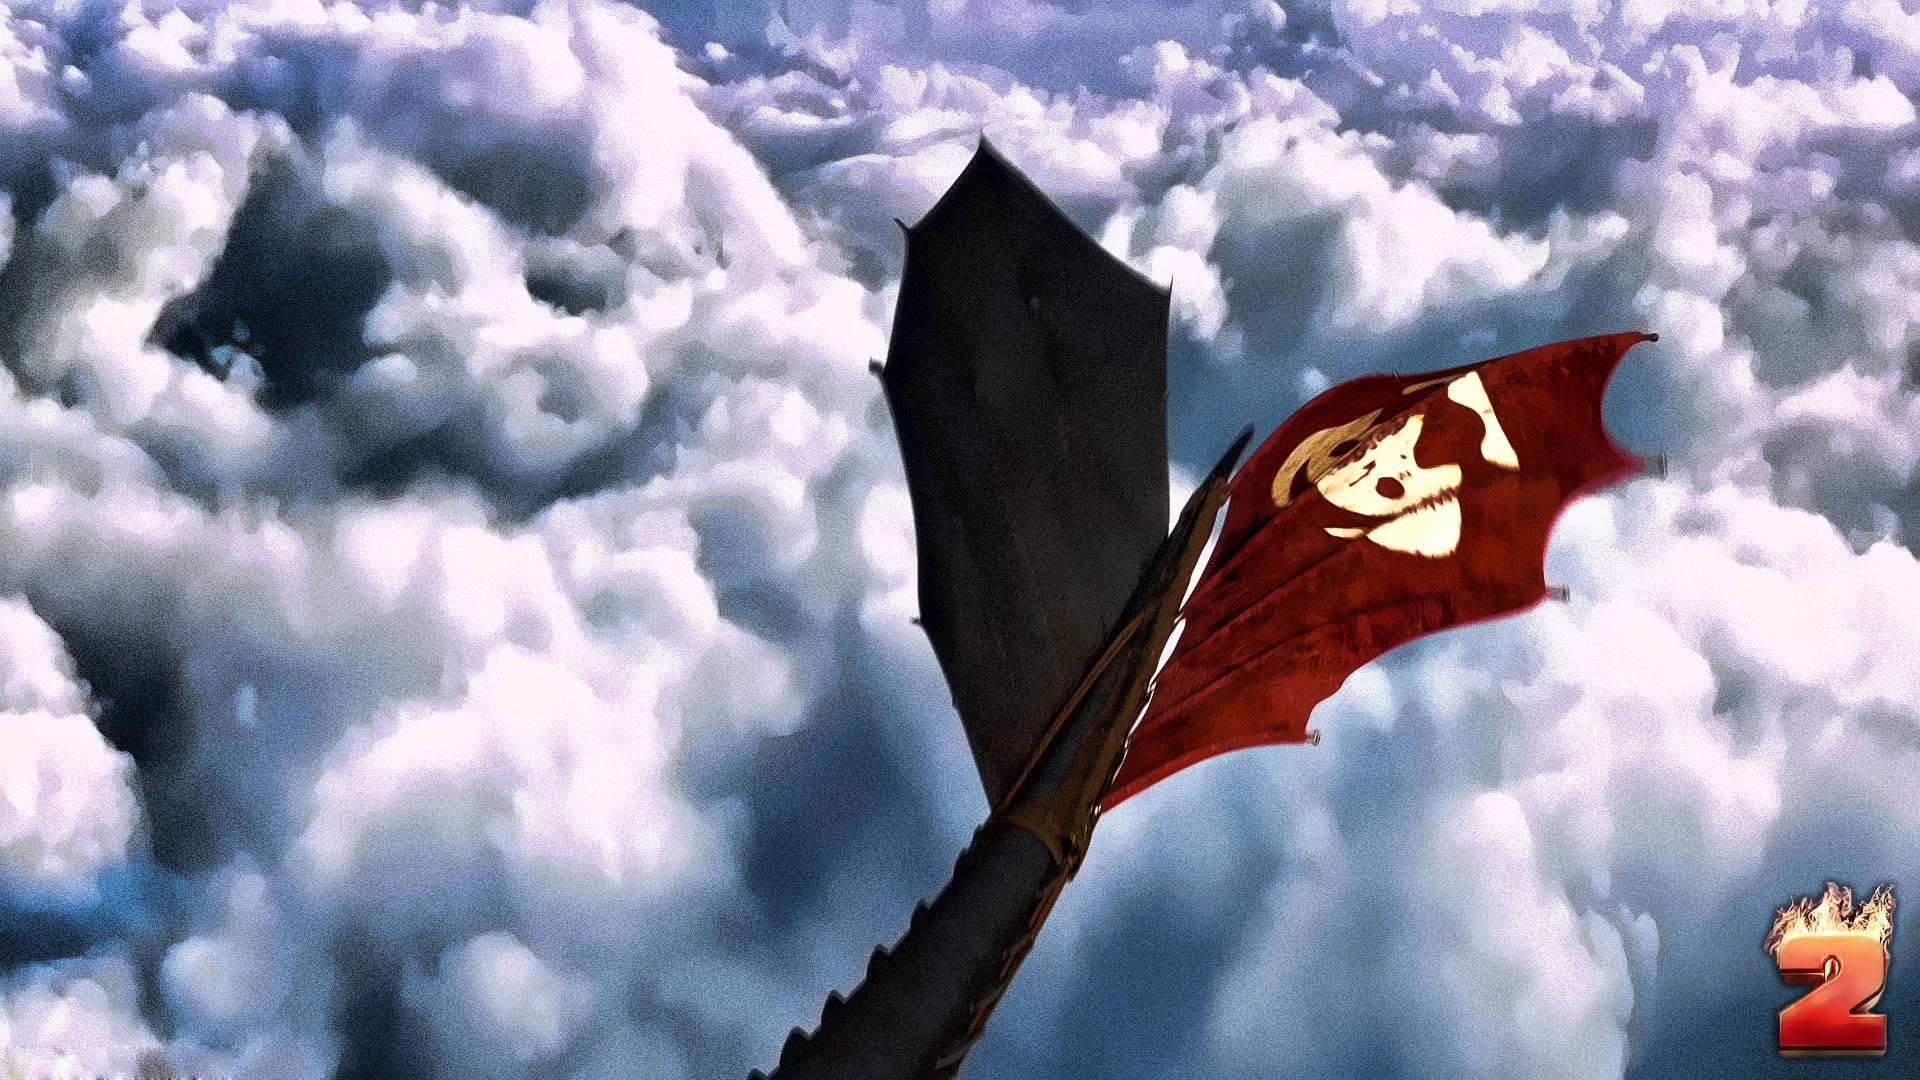 あなたのドラゴンのhd壁紙を訓練する方法,空,雲,積雲,国旗,ストックフォト